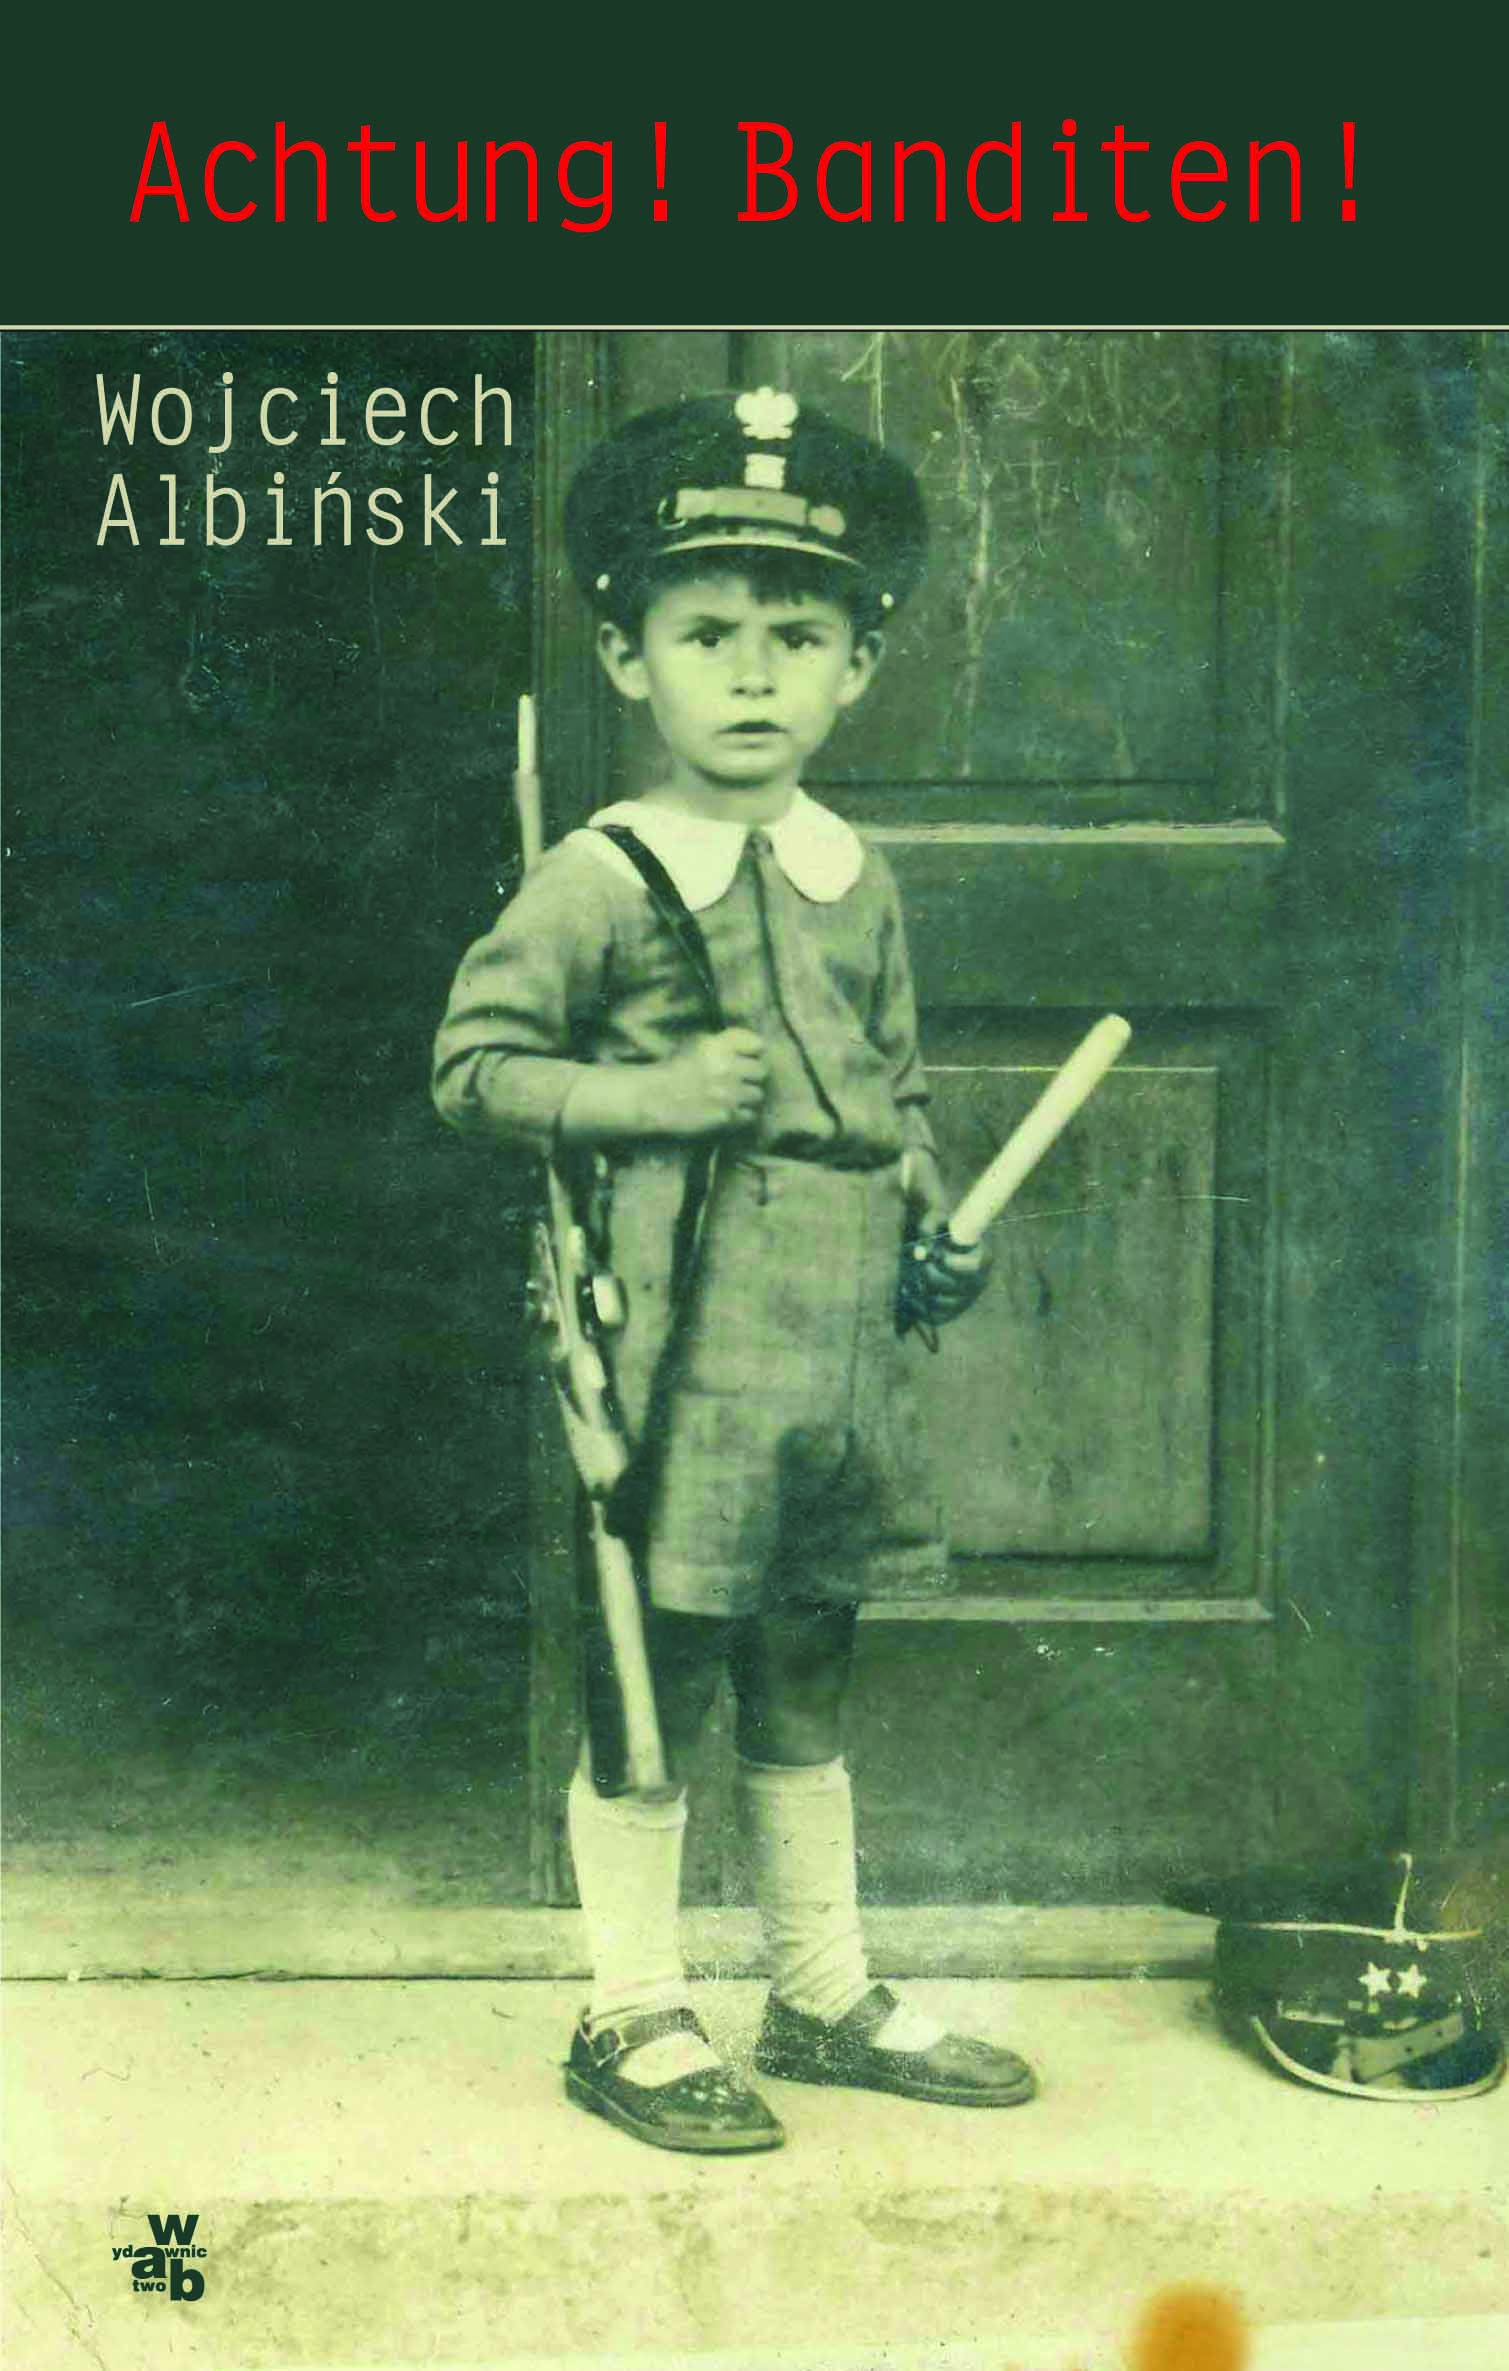 Wojciech Albiński, Achtung Banditen, WAB